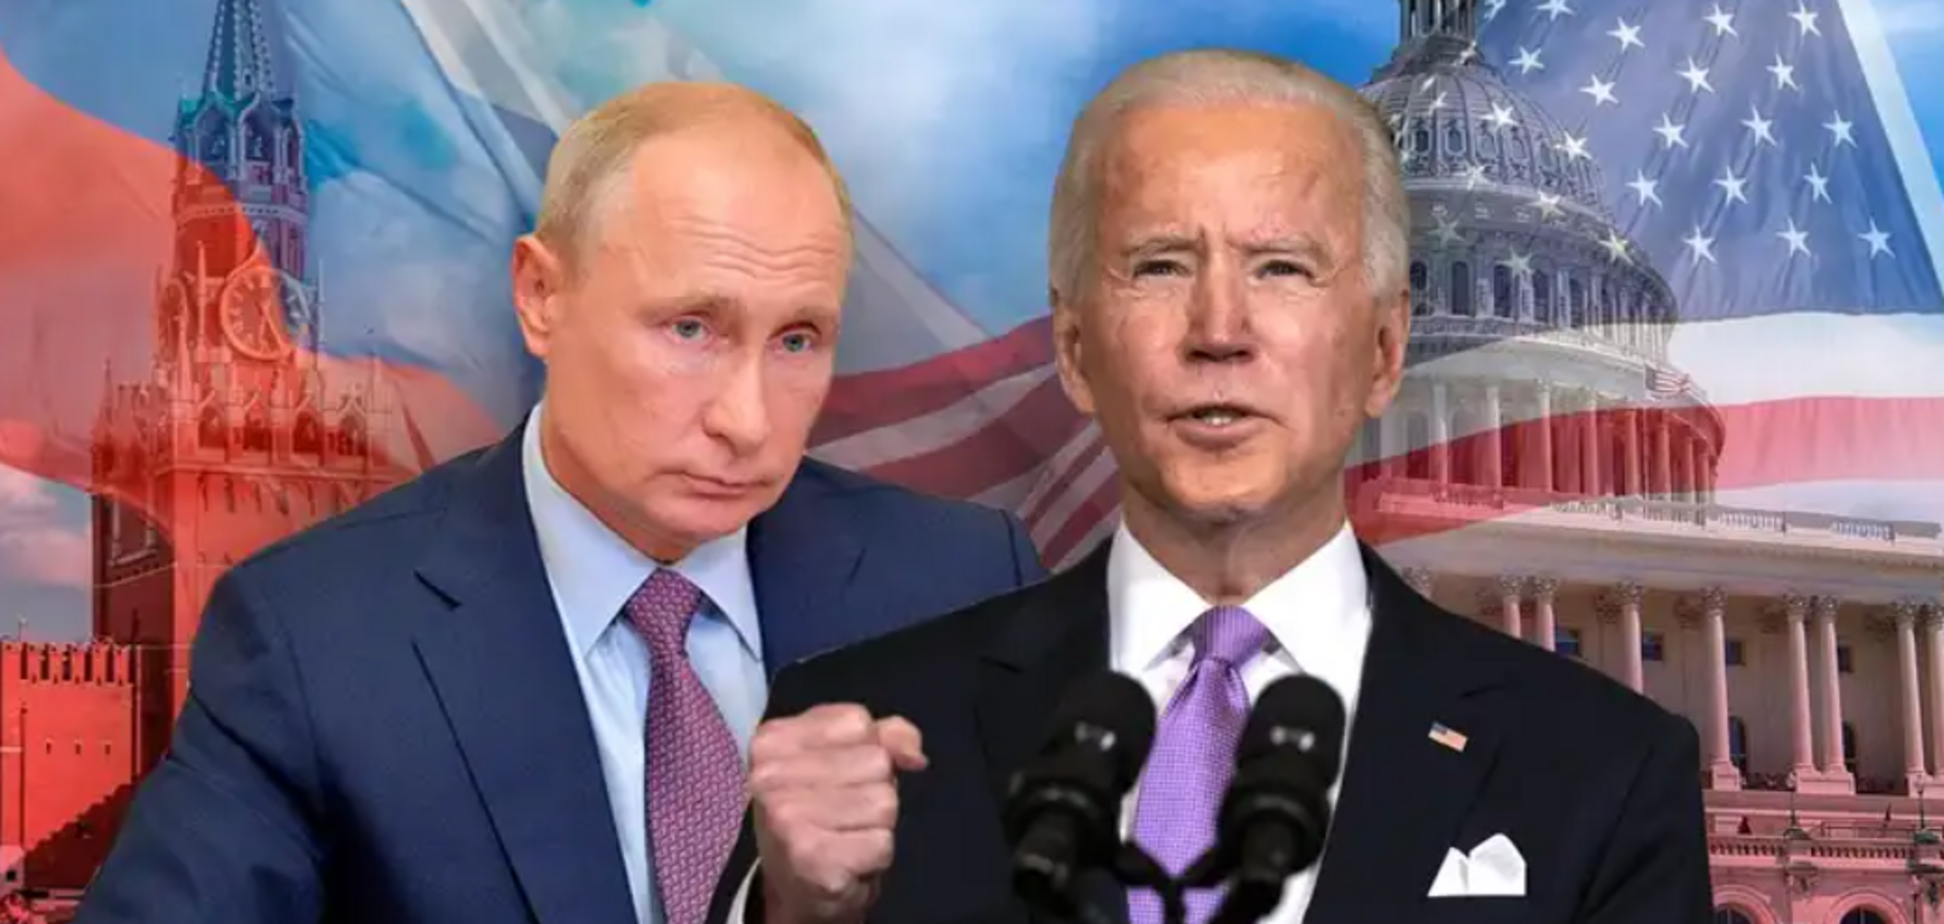  'Висновки робіть самі': в США сказали, чи визнають Путіна легітимним президентом РФ